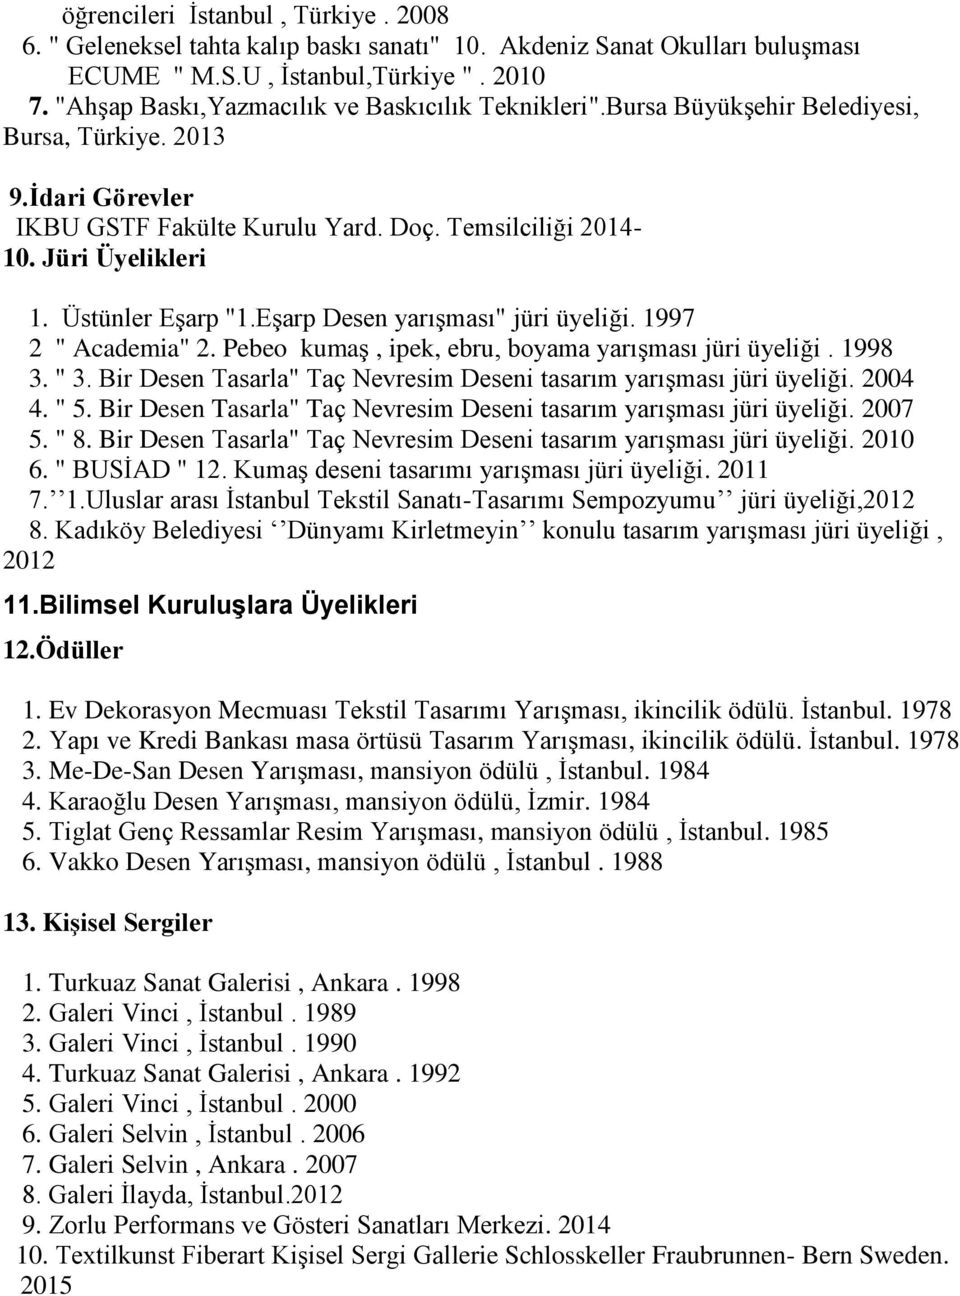 Üstünler Eşarp "1.Eşarp Desen yarışması" jüri üyeliği. 1997 2 " Academia" 2. Pebeo kumaş, ipek, ebru, boyama yarışması jüri üyeliği. 1998 3. " 3.